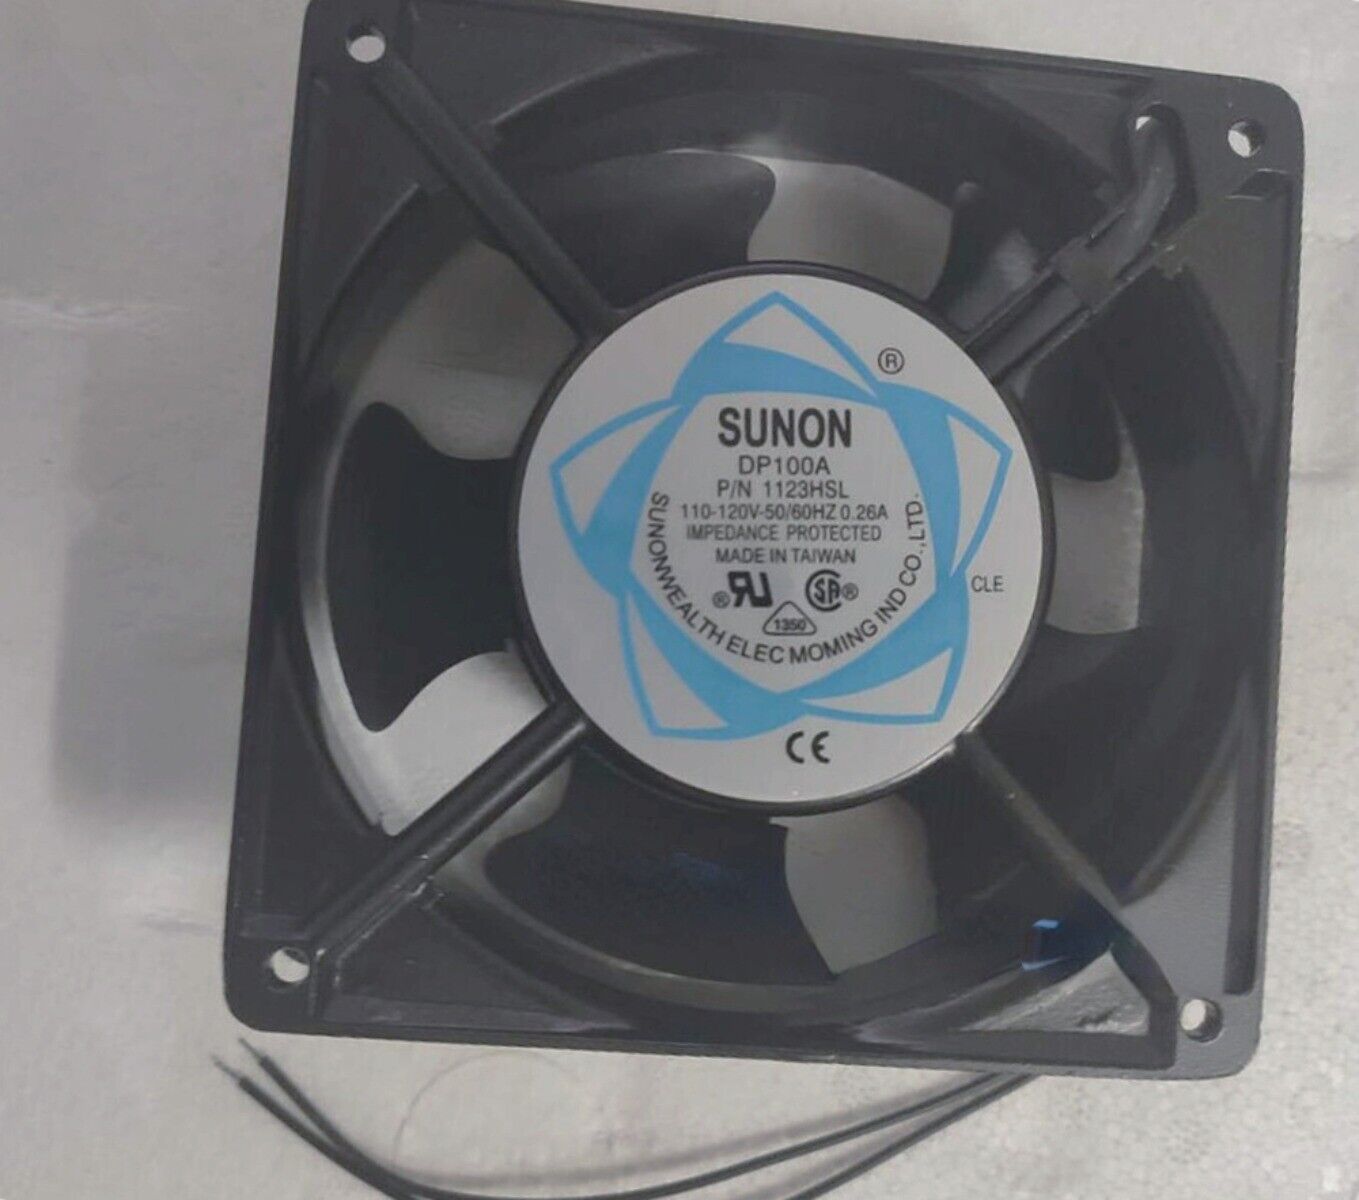 Sunon Fan DP100A 1123HSL 120x120x38mm 110-120V 0.26A Ball bearings Cooling Fans